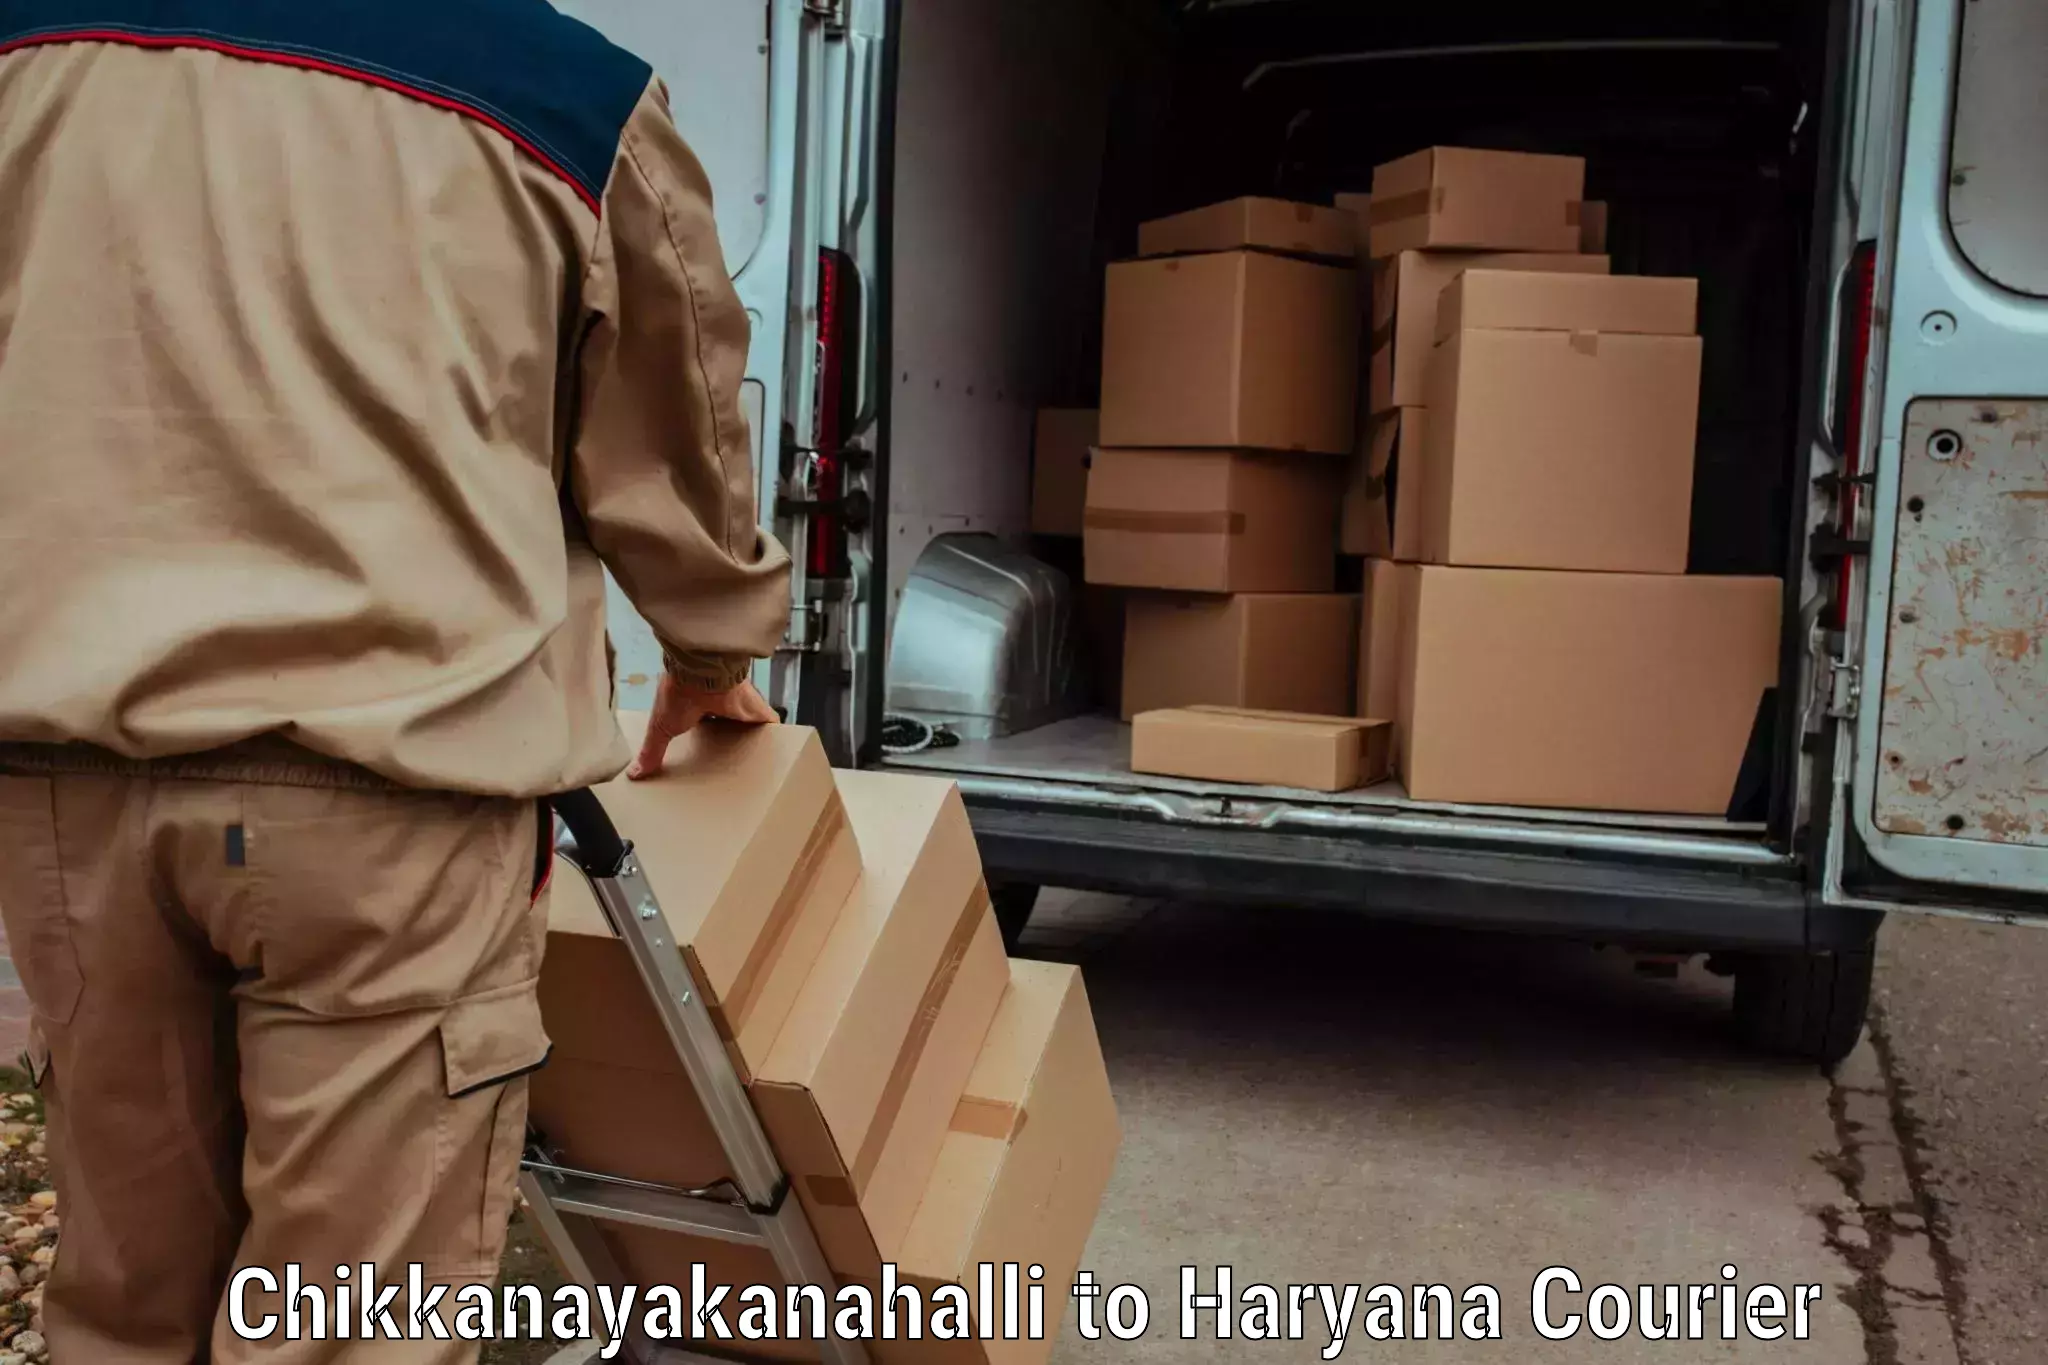 Special handling courier Chikkanayakanahalli to Charkhari